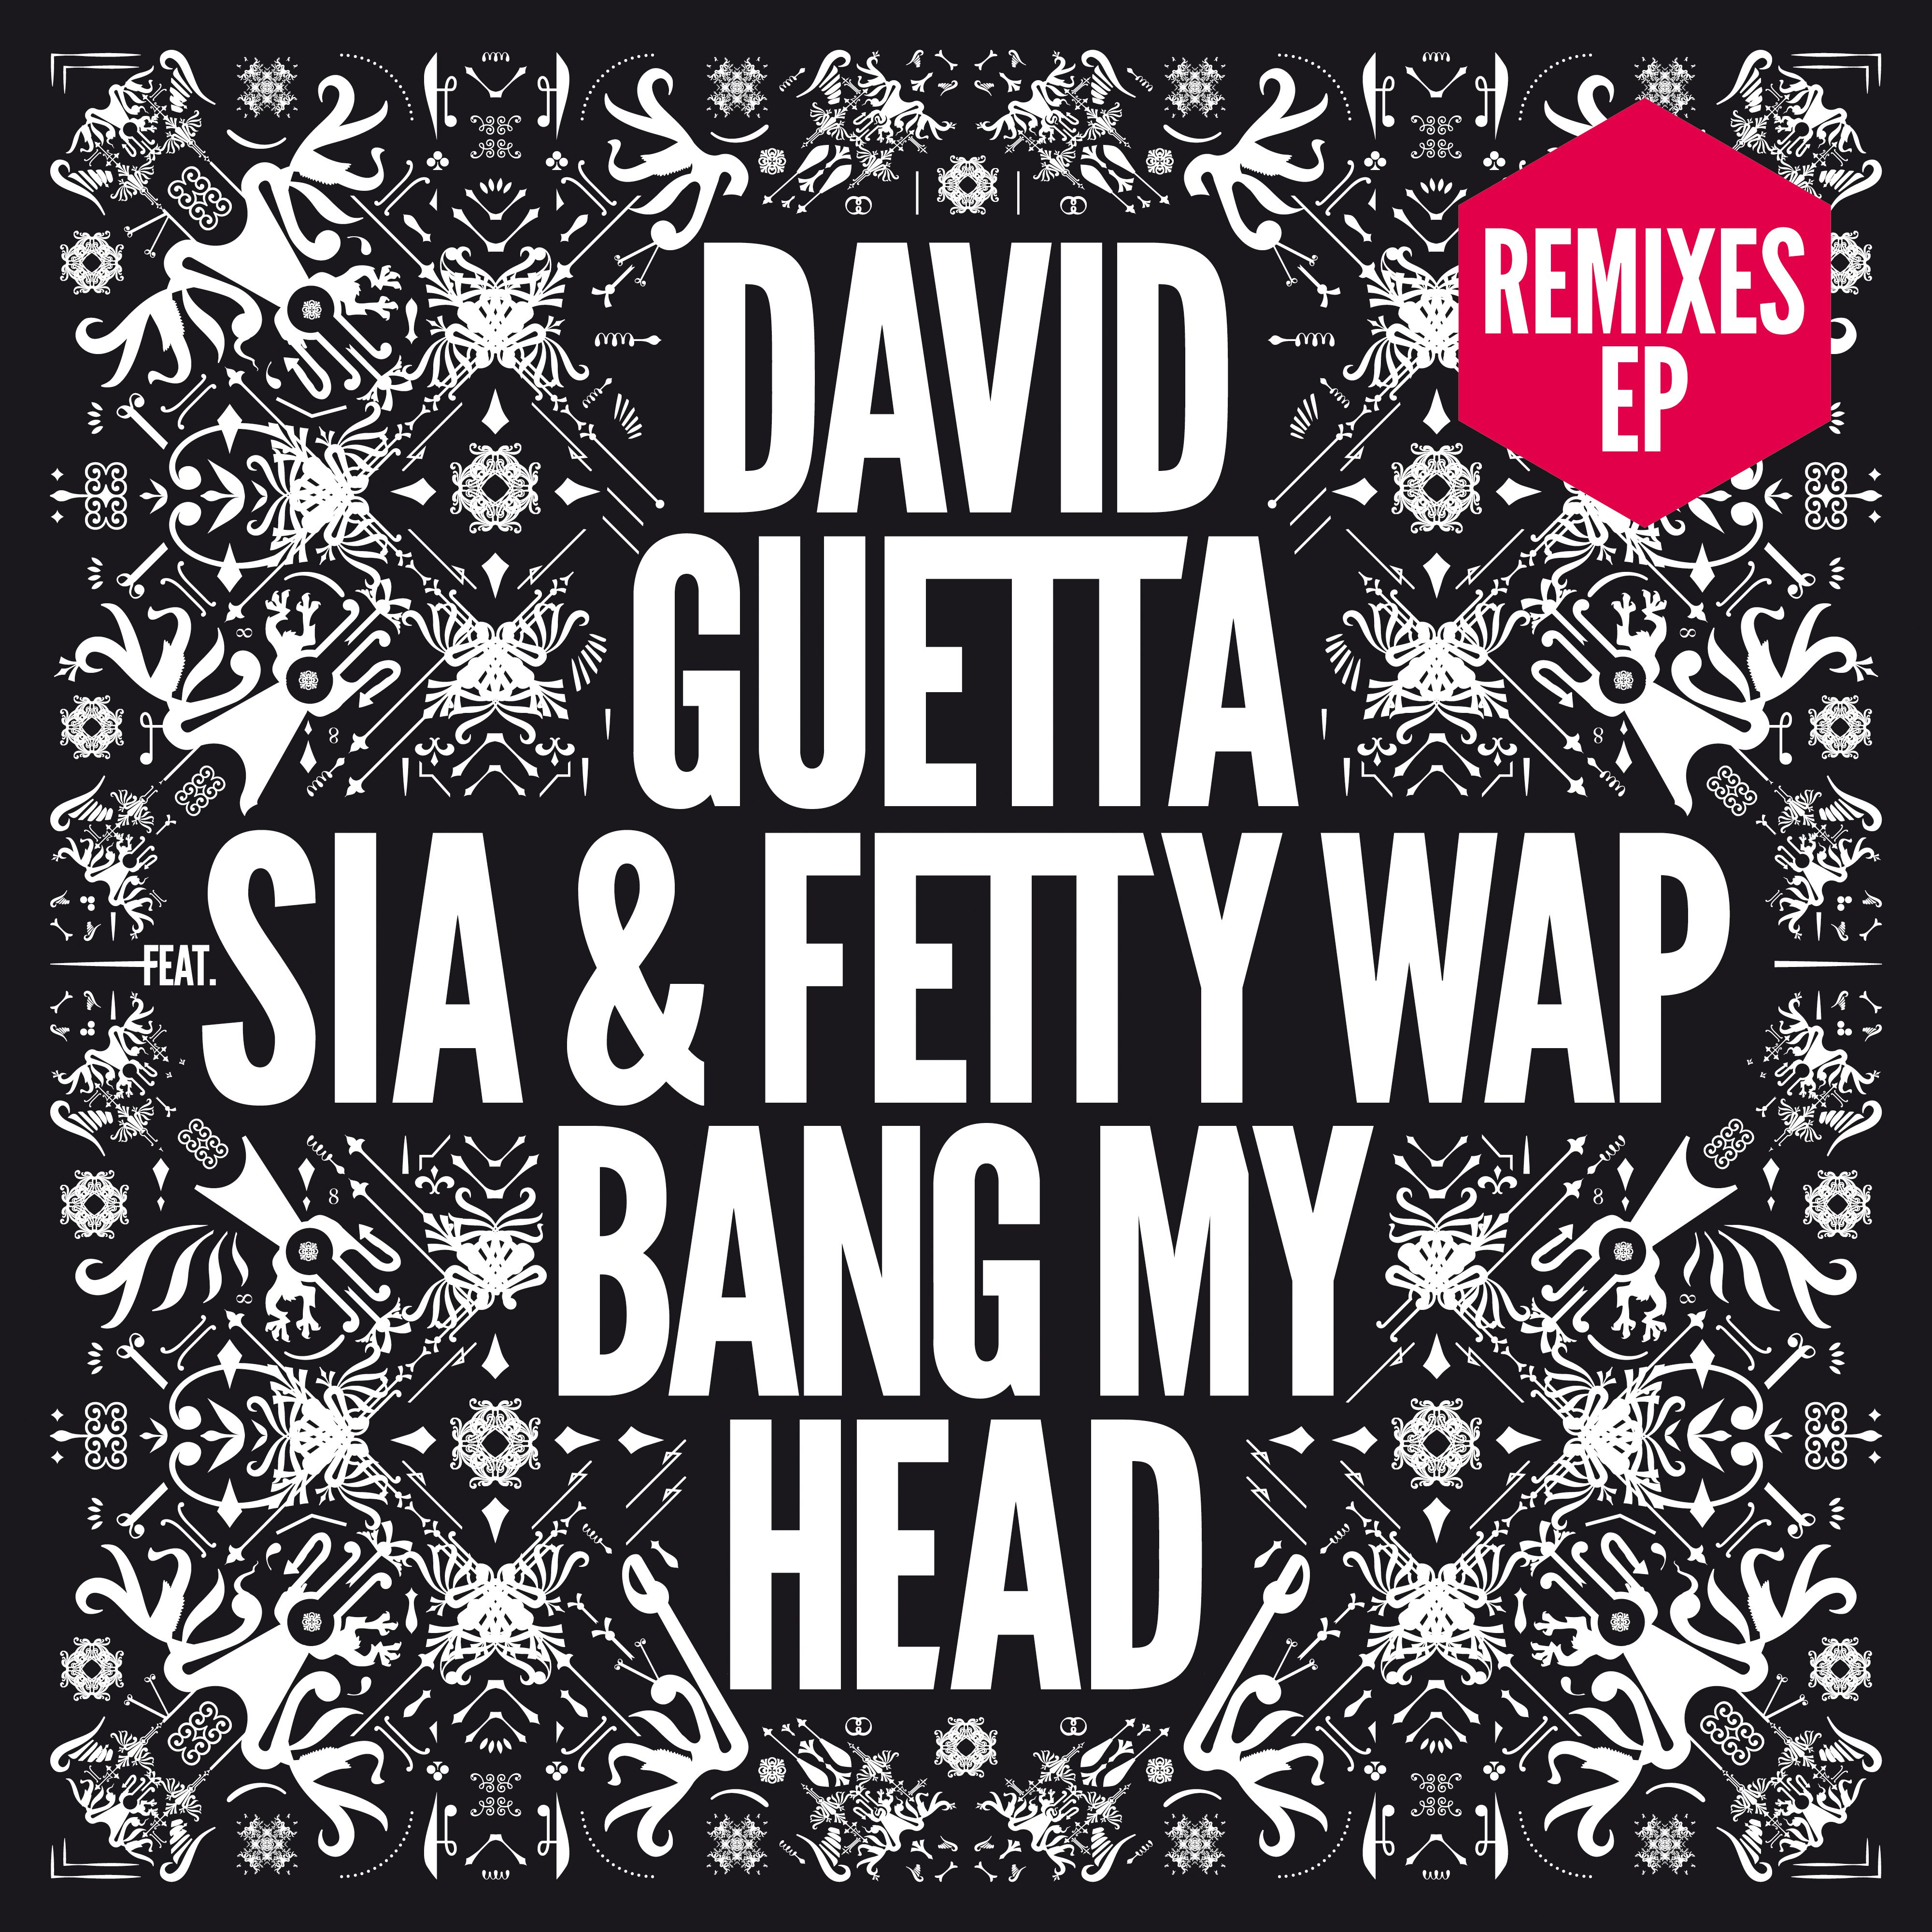 Bang my Head (feat. Sia & Fetty Wap) [Feder Remix]